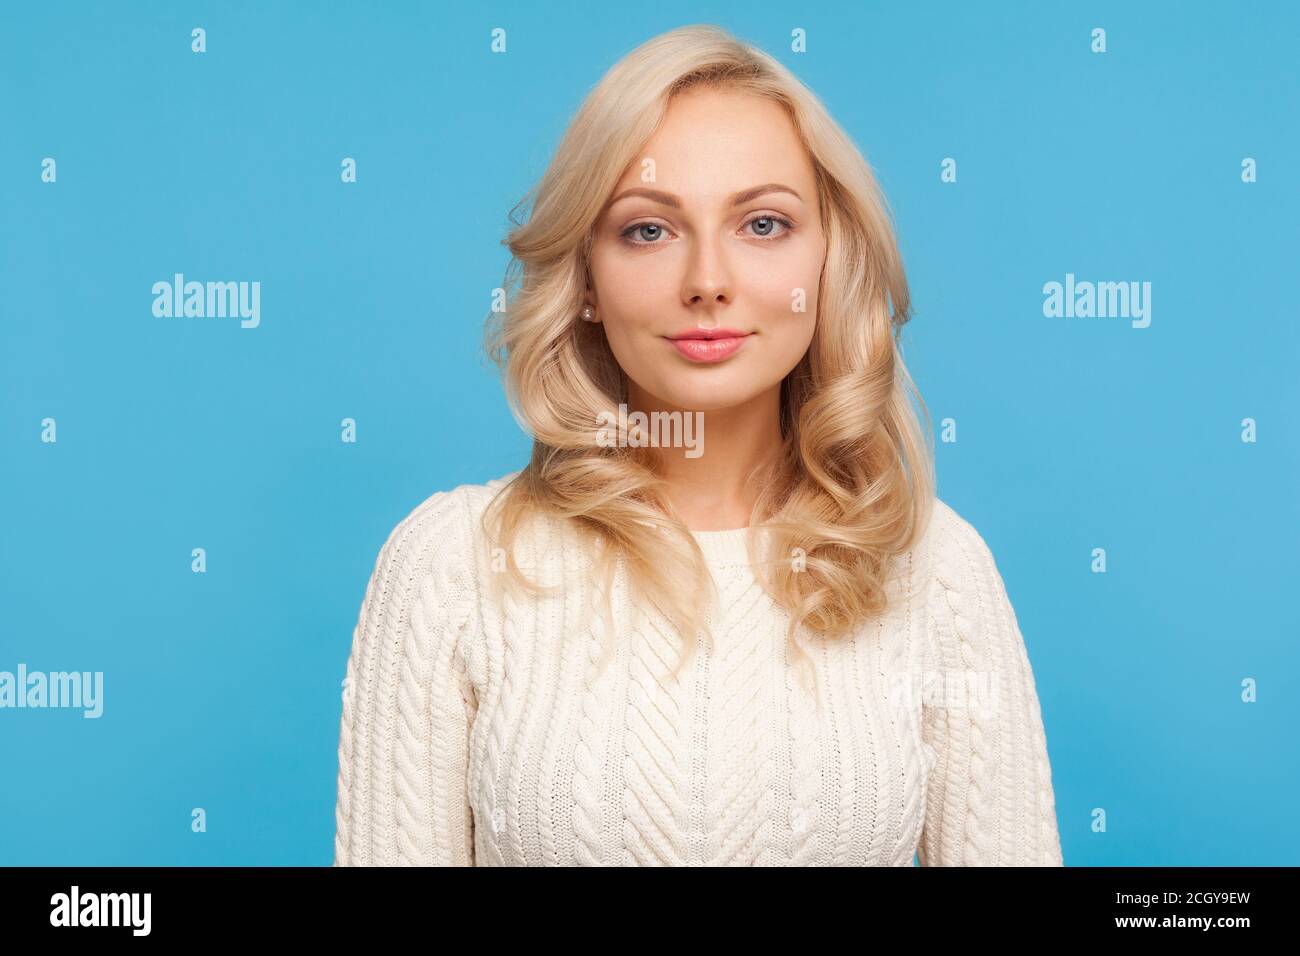 Porträt von schönen selbstbewussten Frau mit lockigen blonden Haaren Blick auf die Kamera mit leichtem Lächeln auf Gesicht. Innenaufnahme des Studios isoliert auf blauem Hintergrund Stockfoto